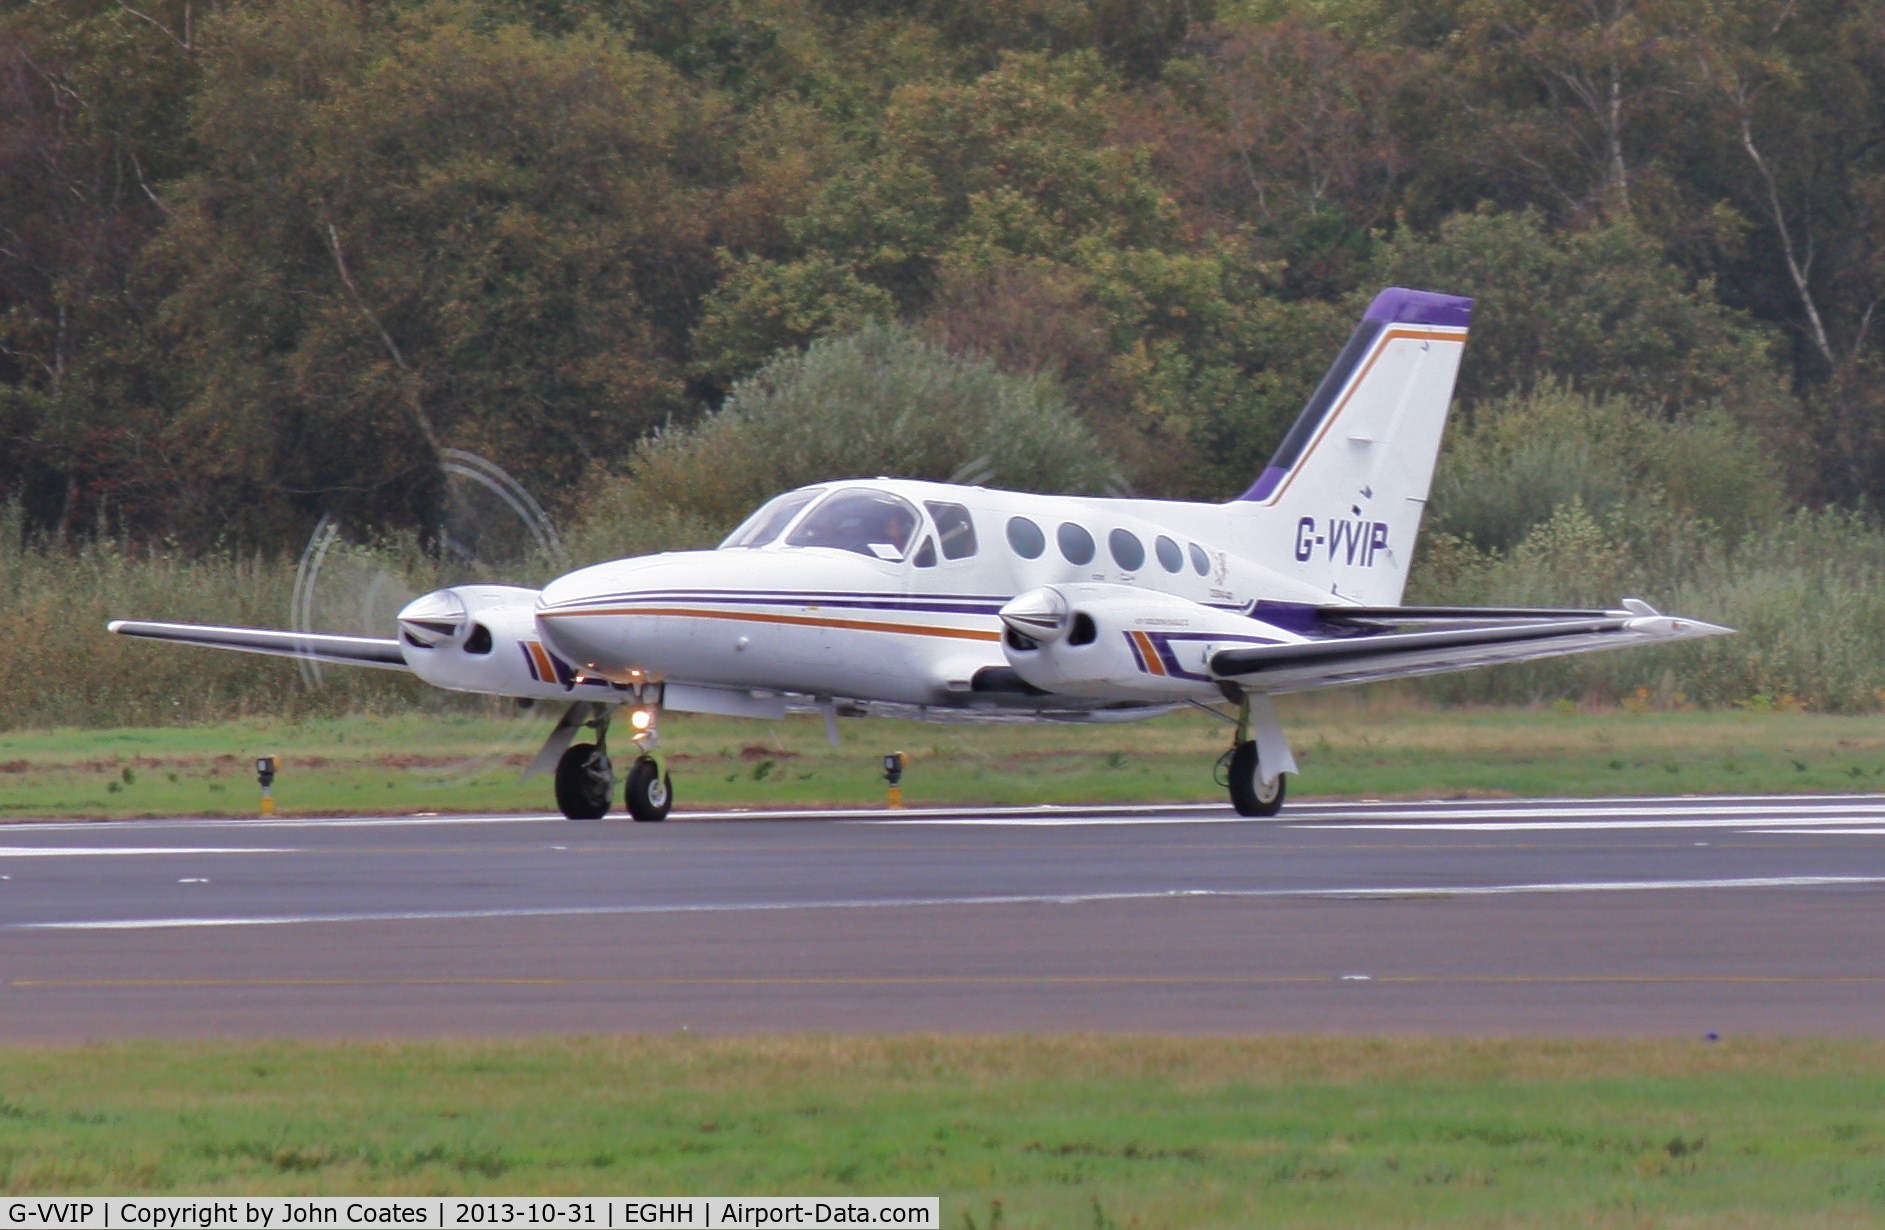 G-VVIP, 1979 Cessna 421C Golden Eagle C/N 421C-0699, Lining up to depart 26